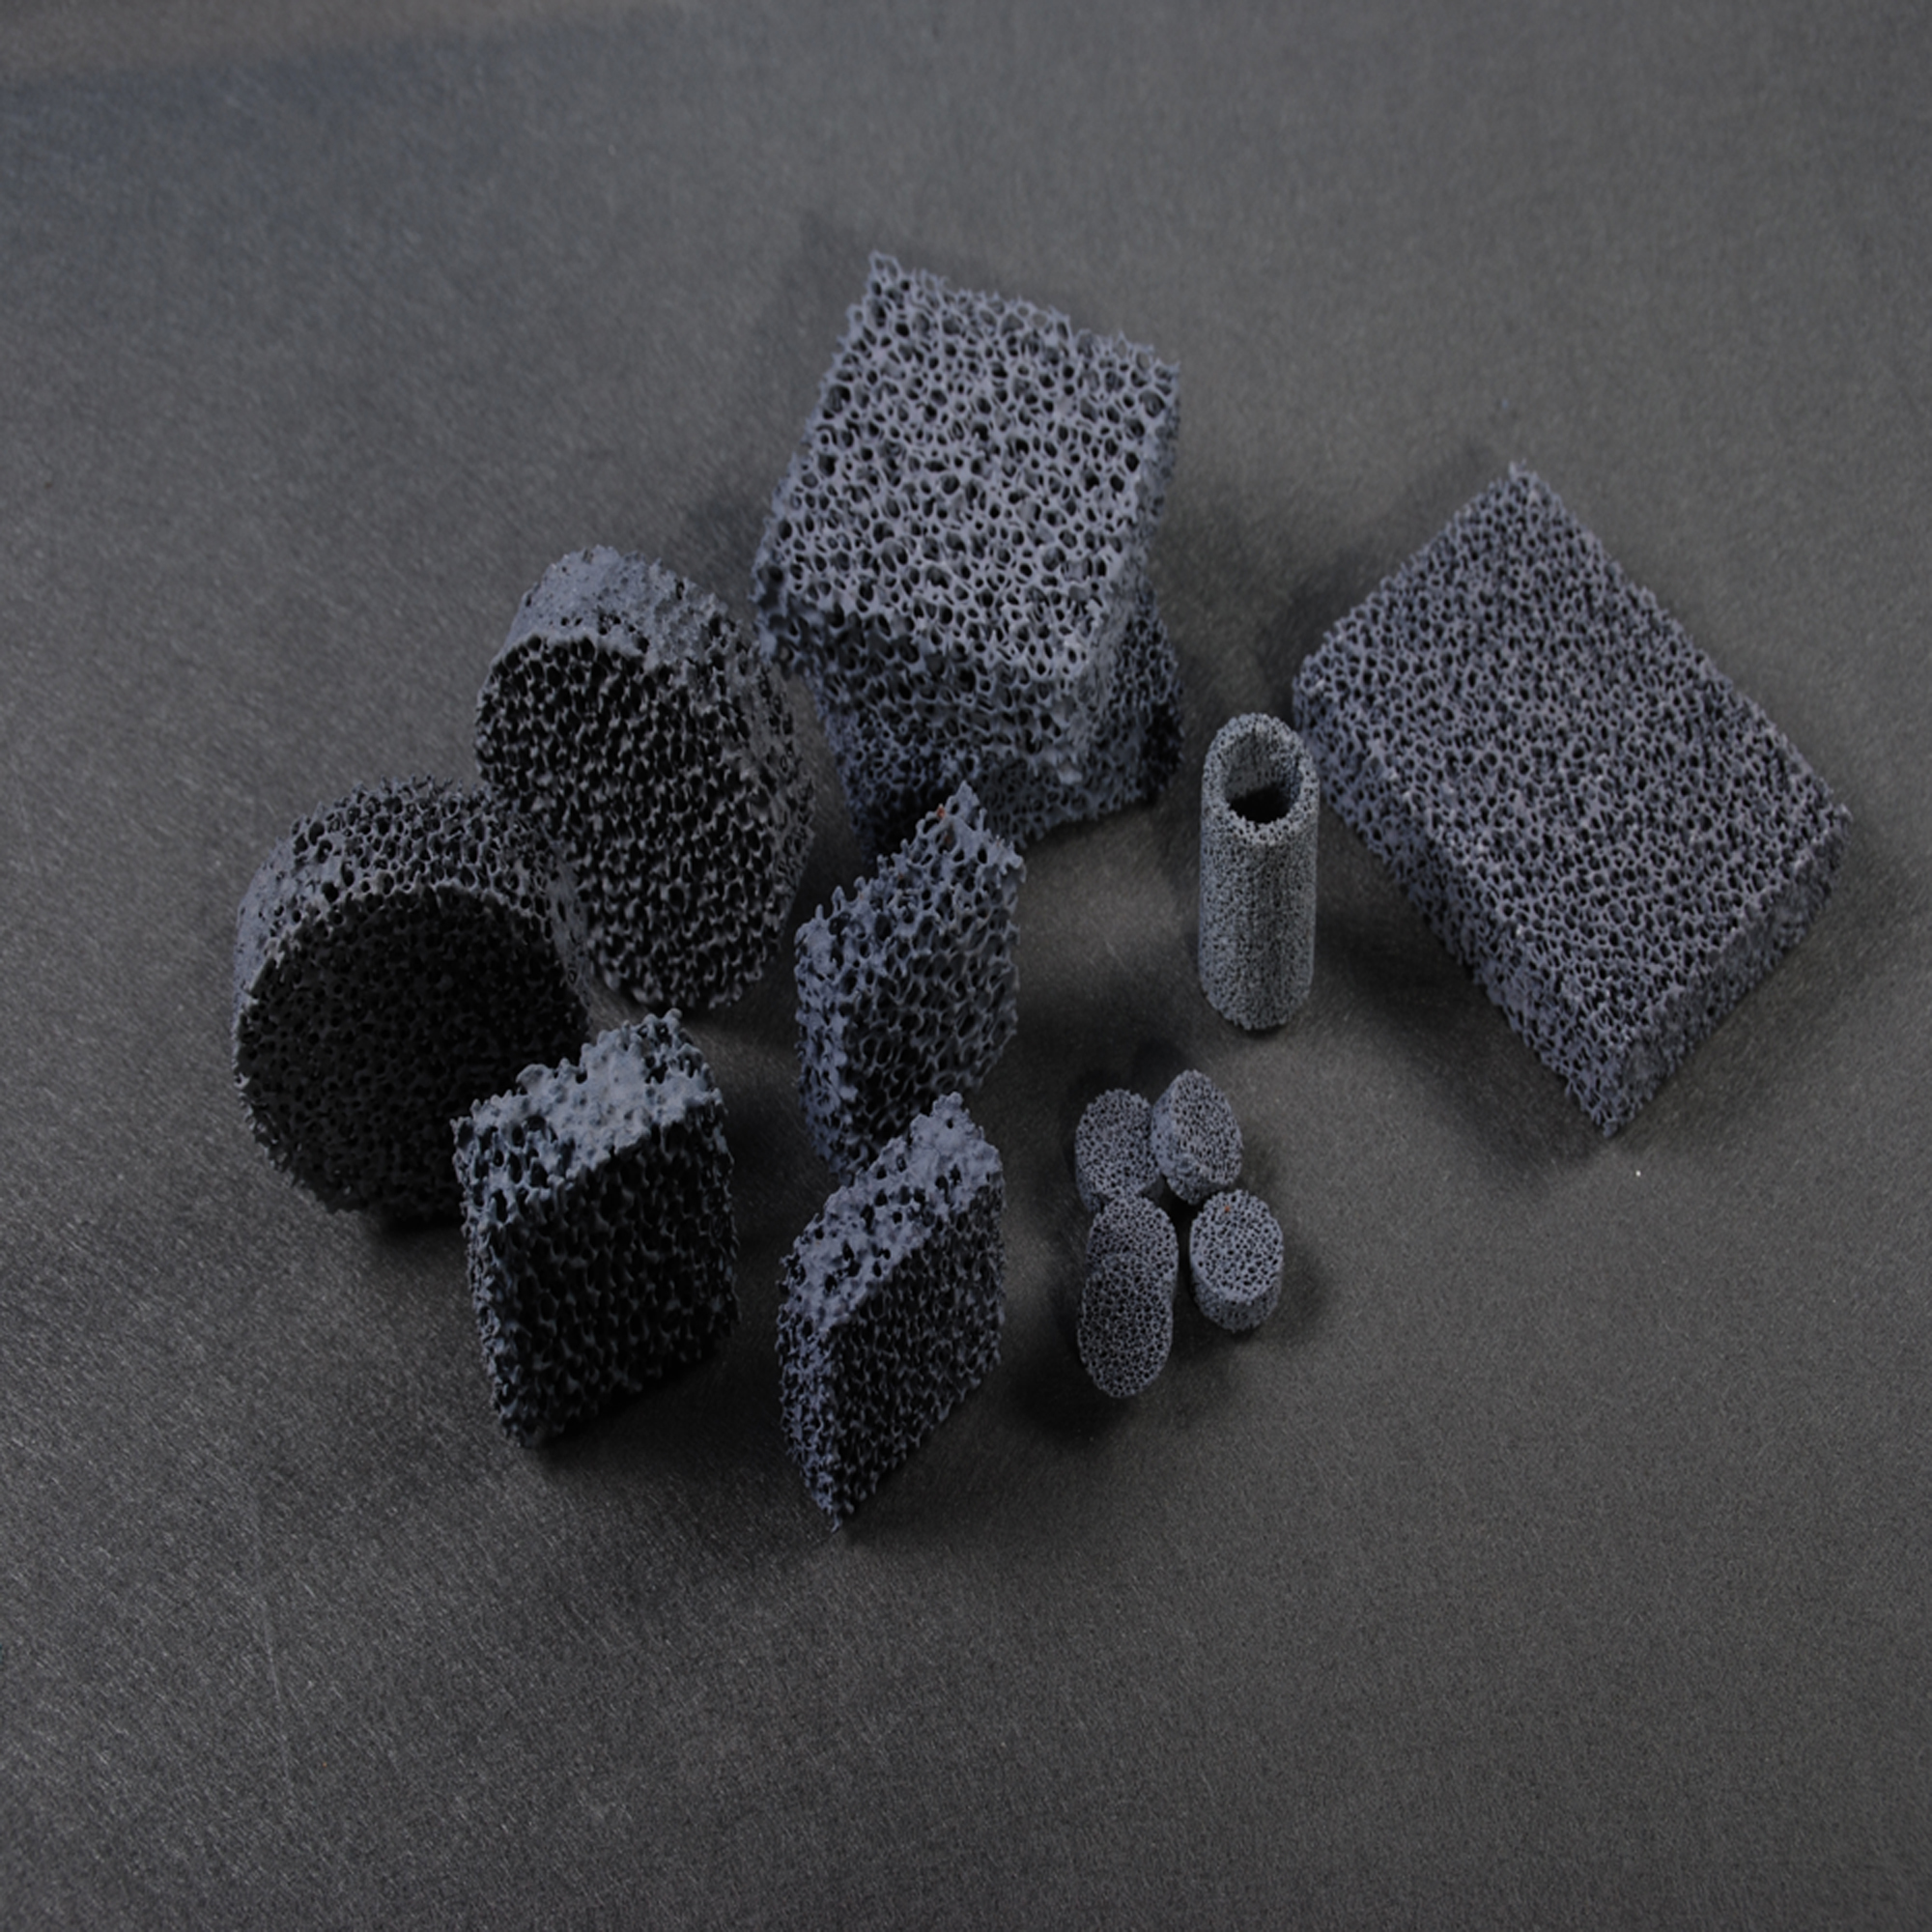 Silicon carbide ceramics foam filter